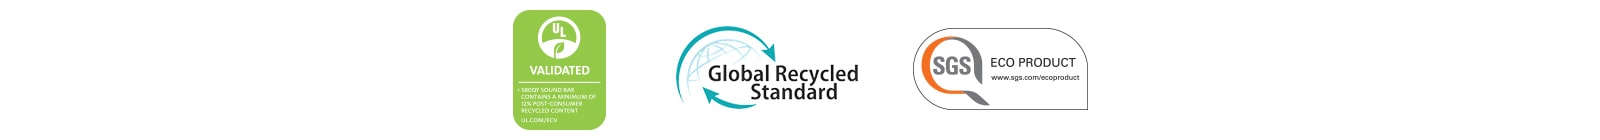 Desde la izquierda, se muestran UL VALIDATED (logotipo), Global Recycled Standard (logotipo), SGS ECO PRODUCT (logotipo).